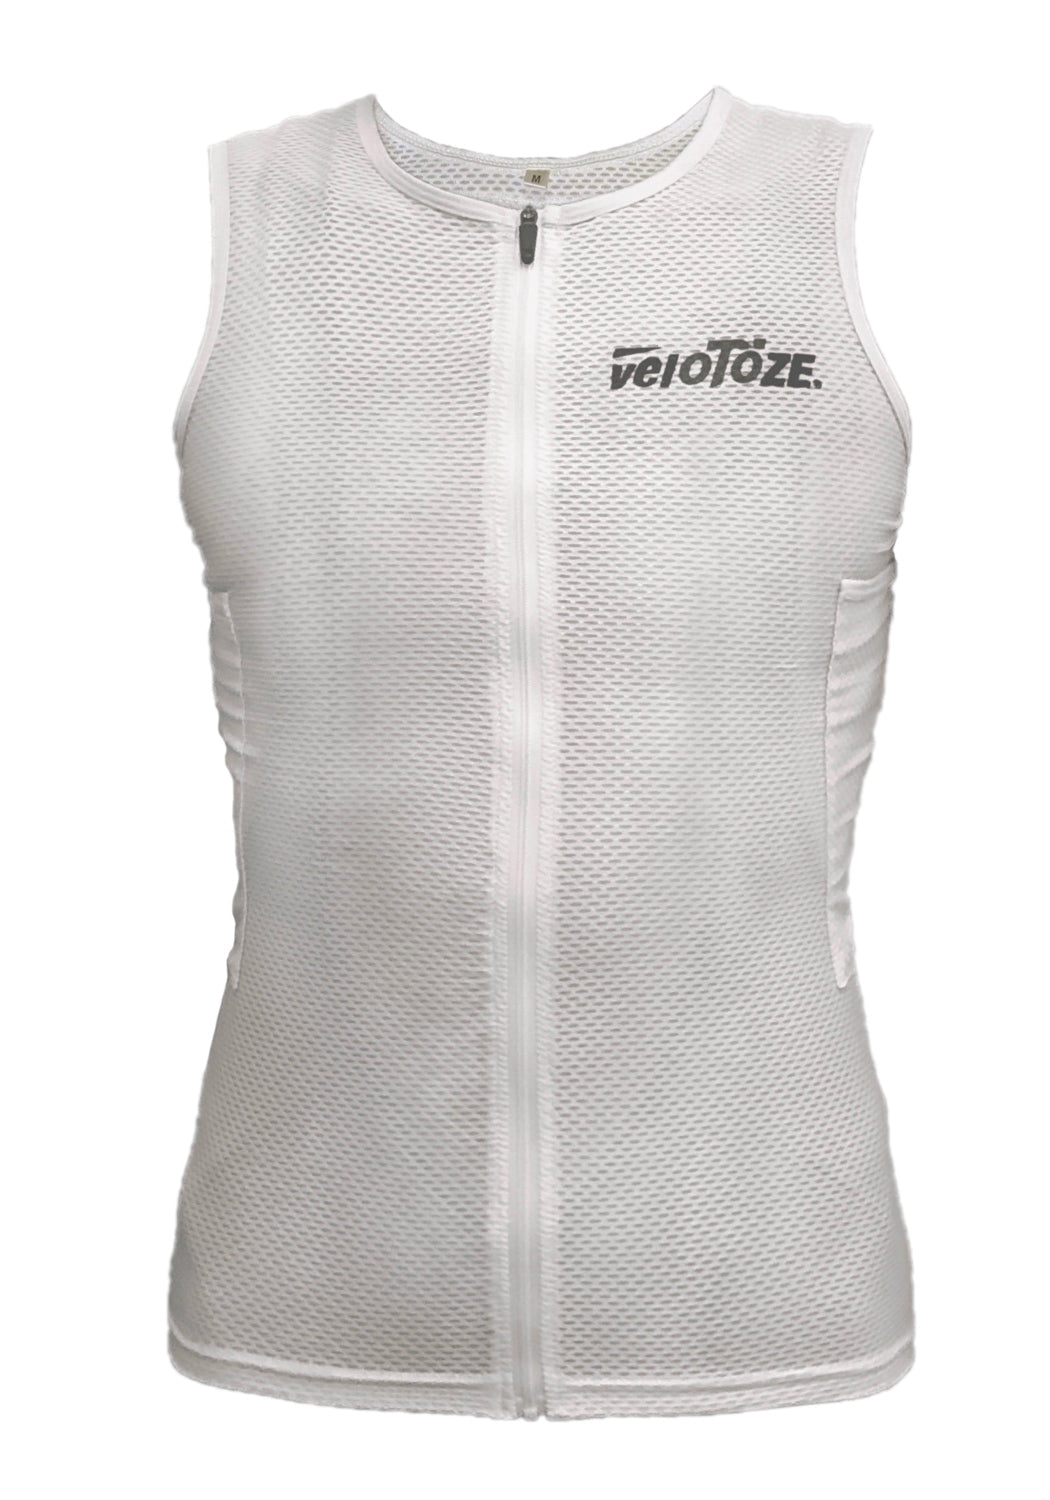 veloToze Cooling Vest